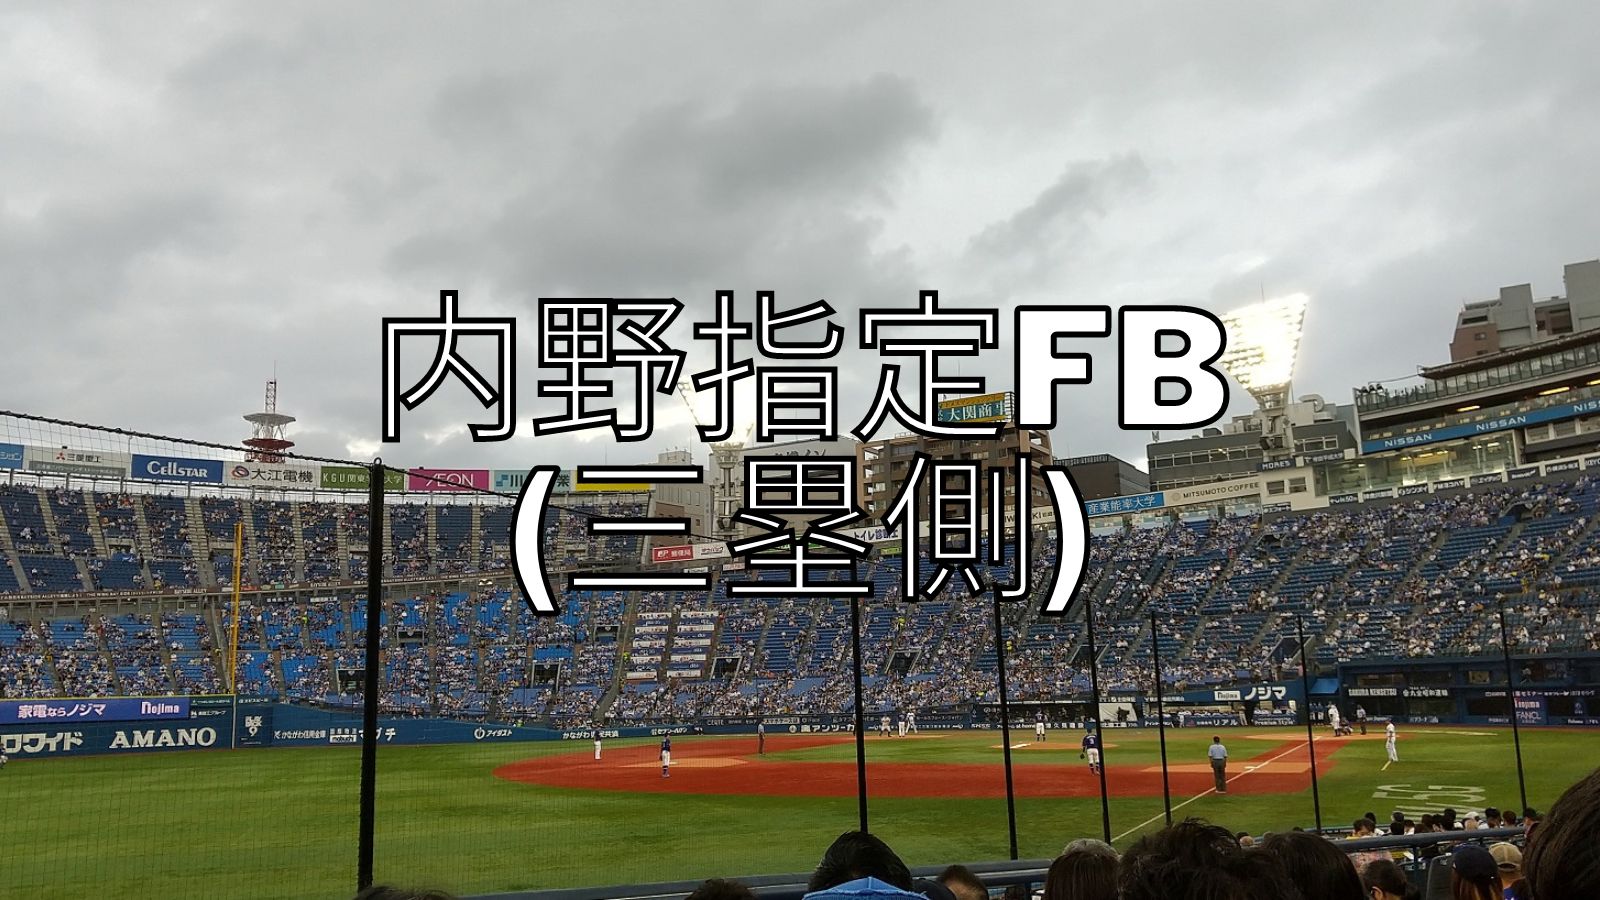 横浜スタジアム 内野指定fb 三塁側の紹介 22 7 つるぐりブログ